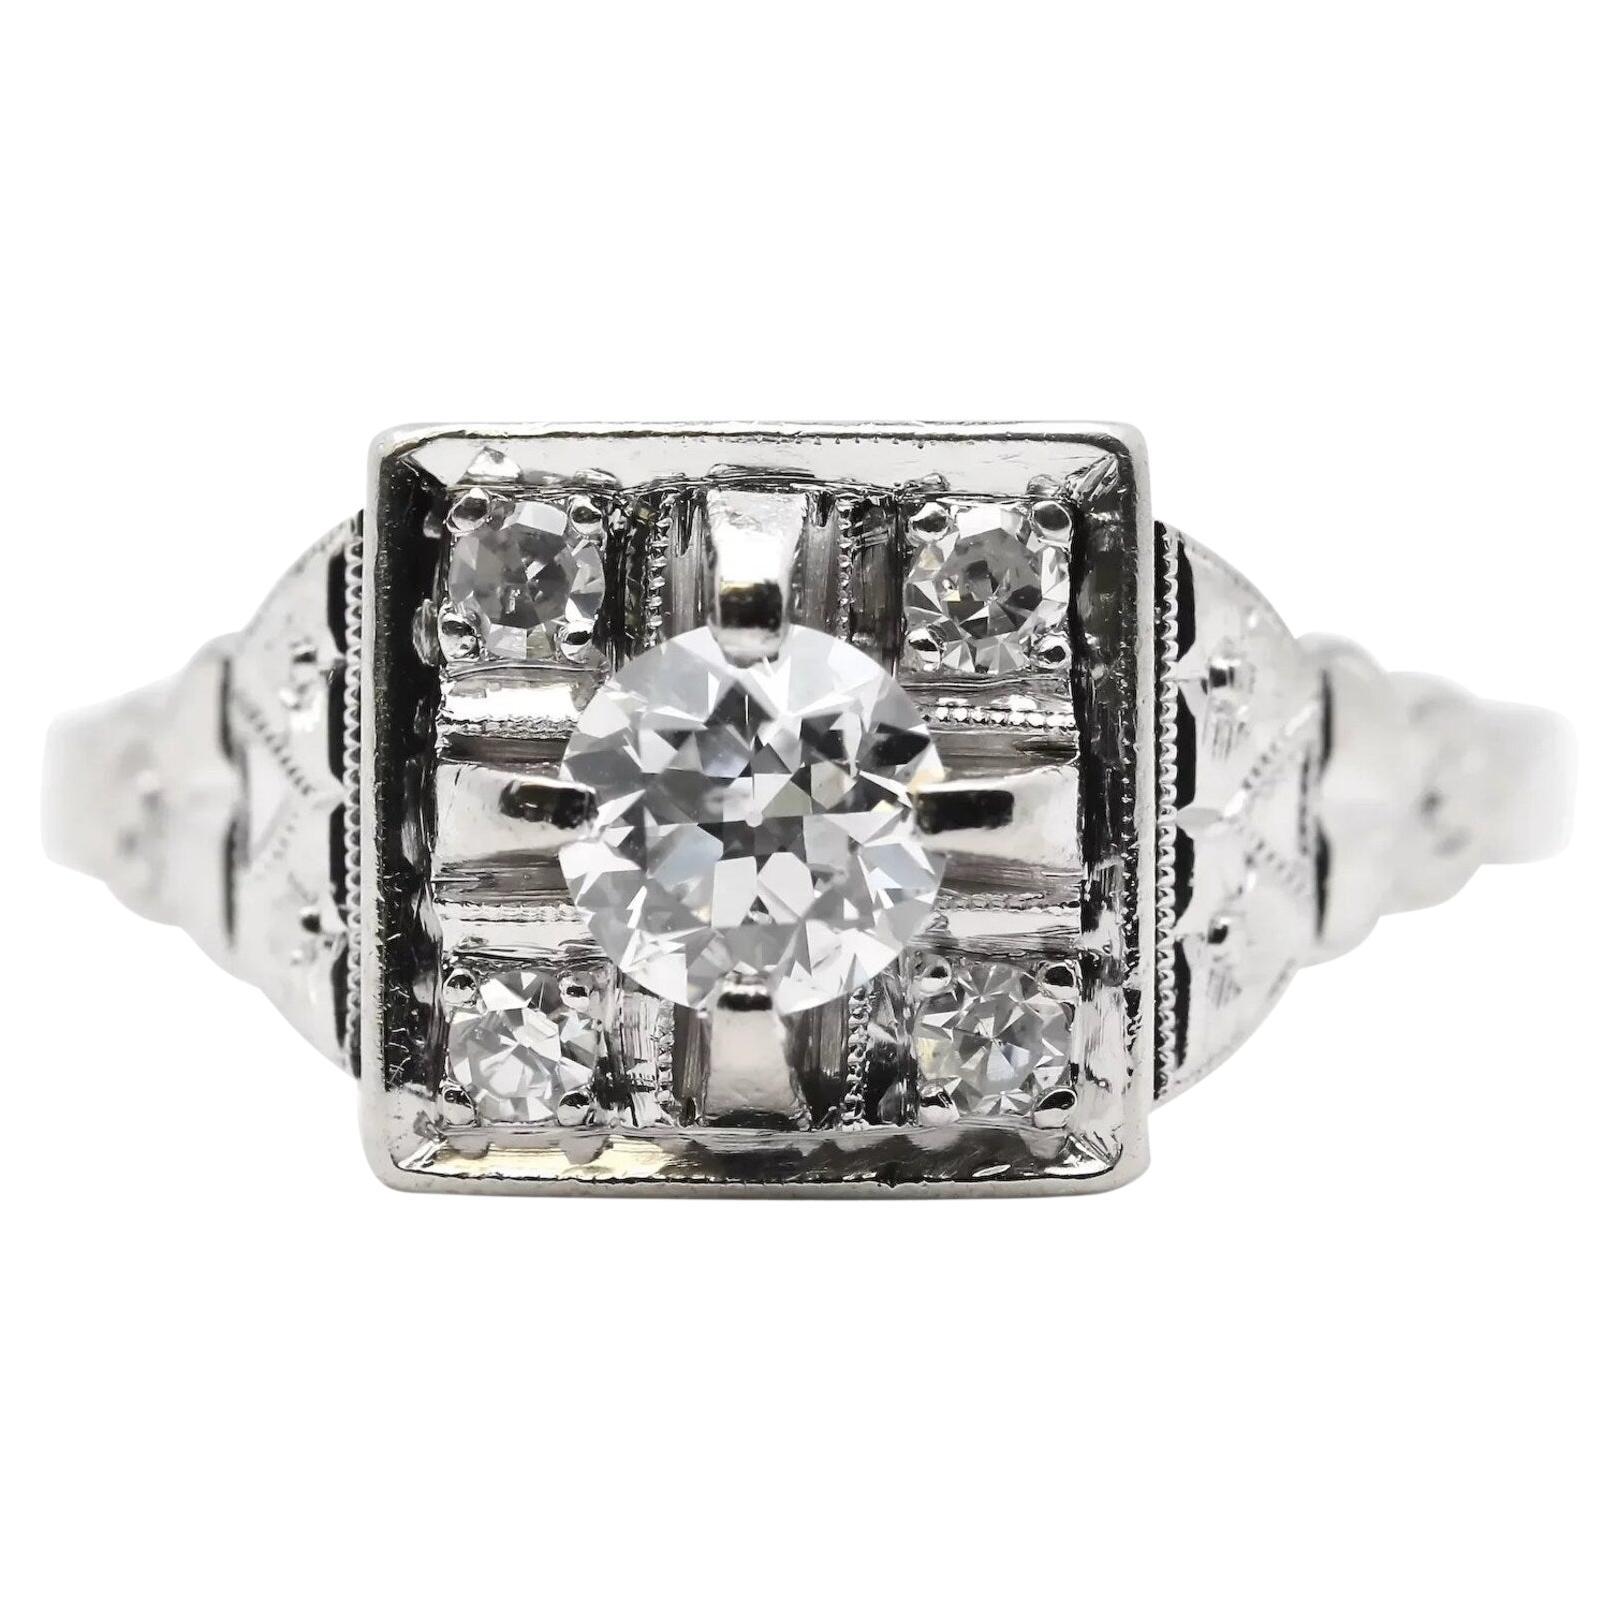 Floral Art Deco 0.53ctw European Cut Diamond Engagement Ring in Platinum